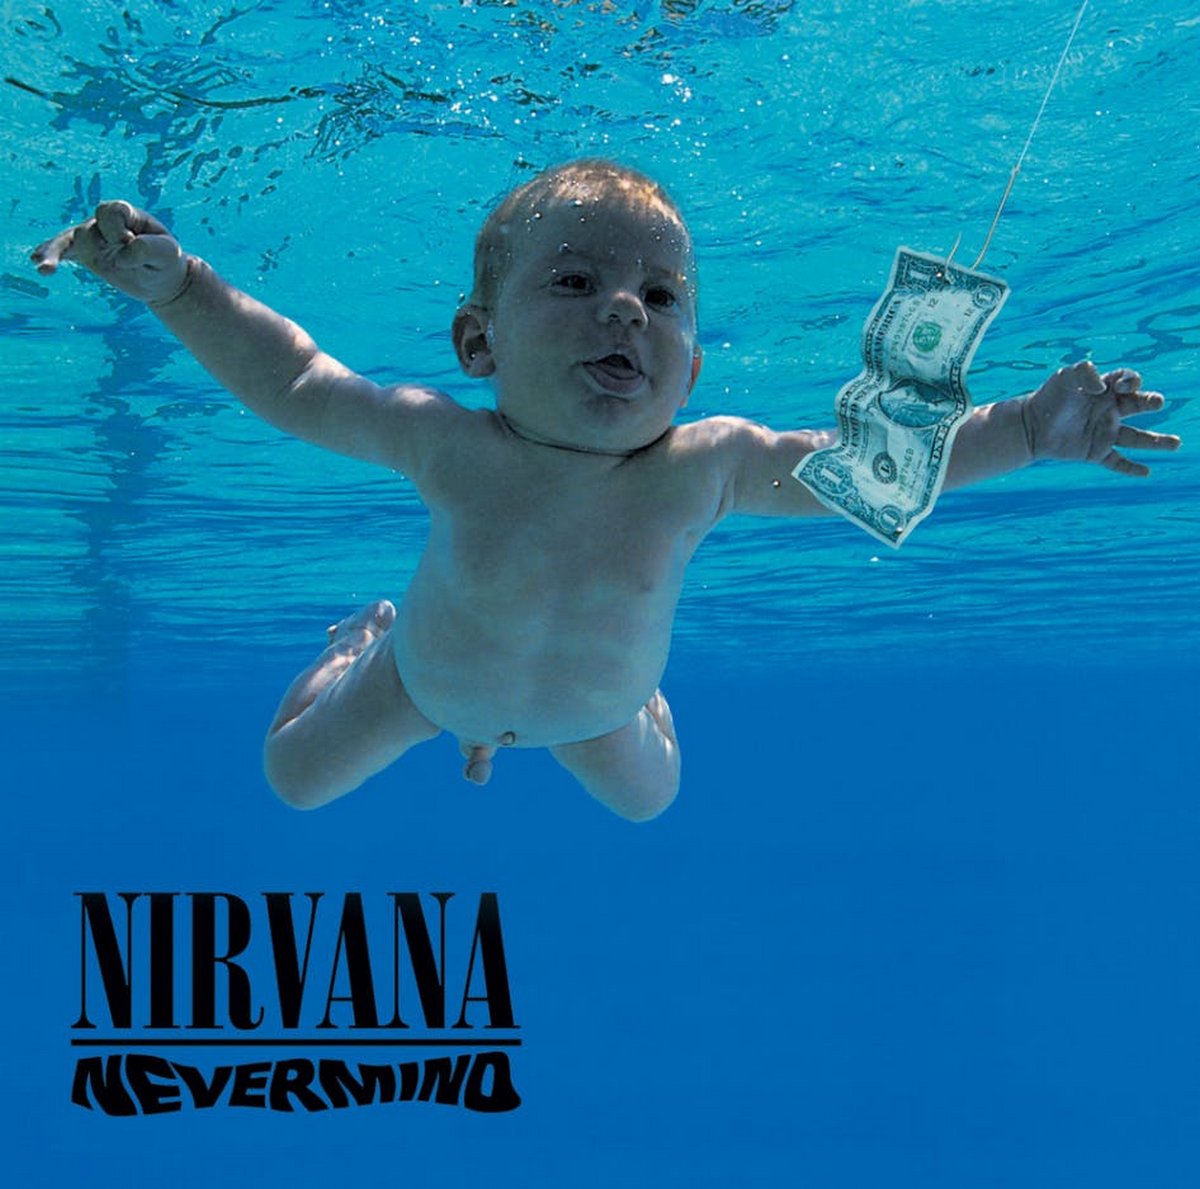 Le bébé sur la couverture de l&#8217;album Nevermind de Nirvana poursuit le groupe pour pornographie juvénile